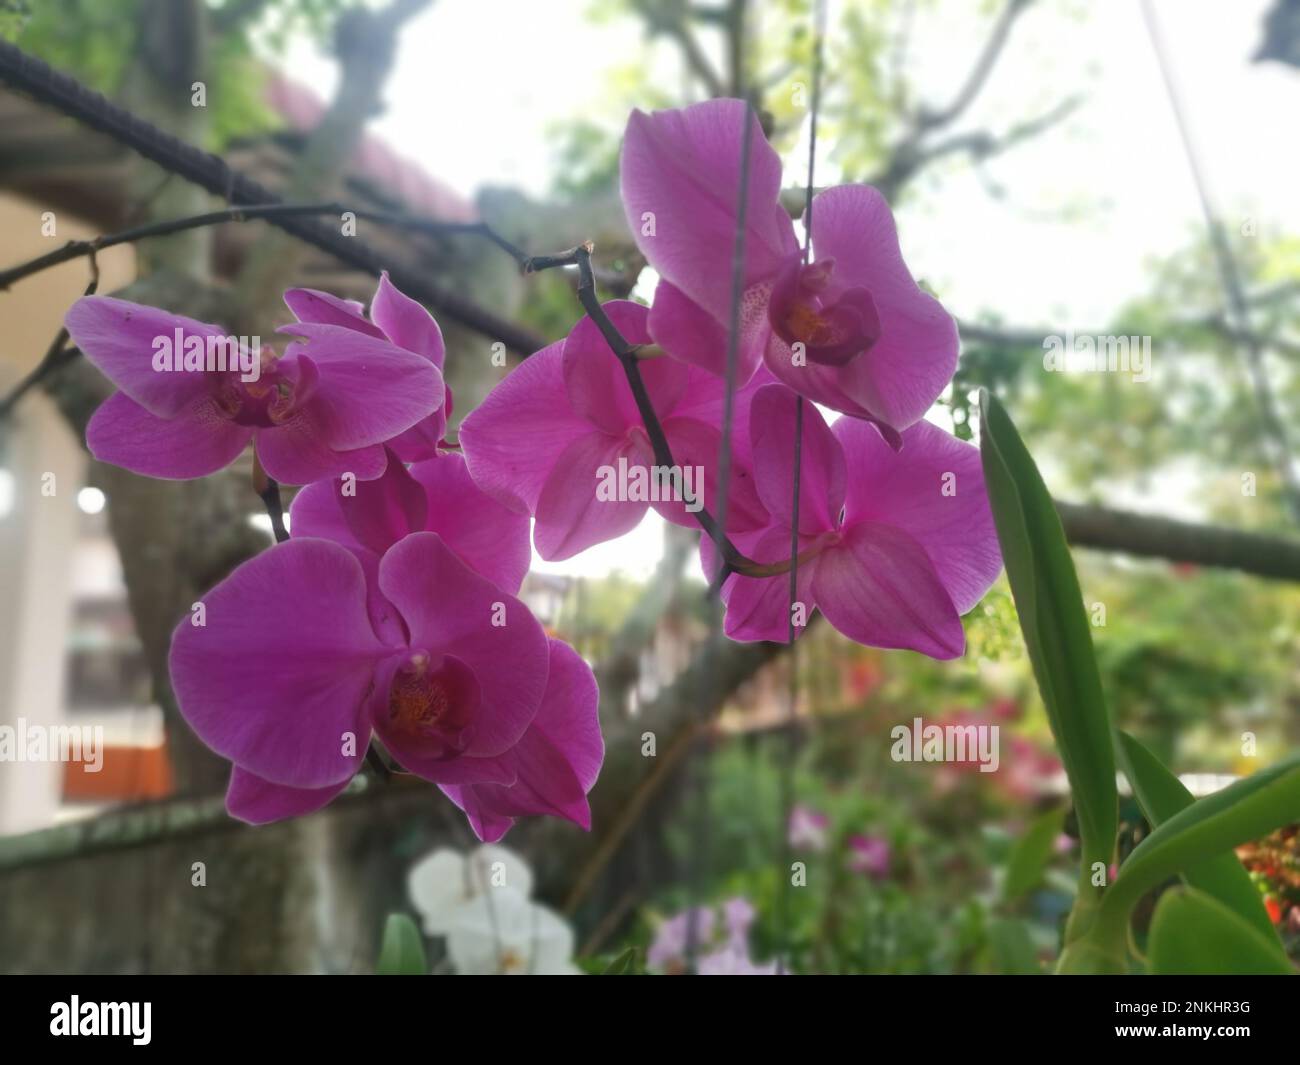 Imagen de la planta de orquídea Phalaenopsis rosa Fotografía de stock -  Alamy